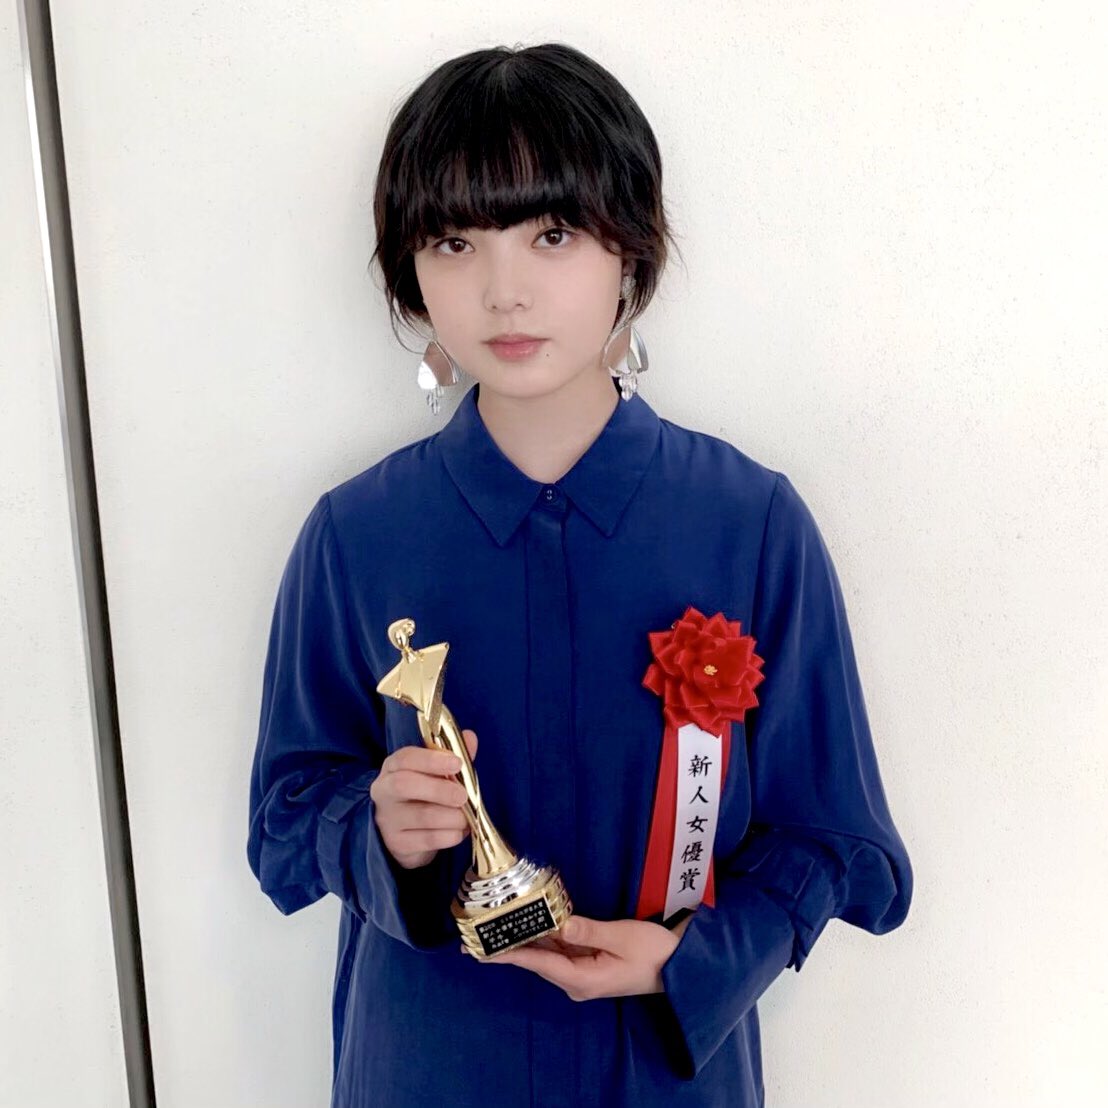 平手友梨奈が、昨年2018年9月に公開、初主演を務めた『響 -HIBIKI-』にて第28回「日本映画批評家大賞」の新人女優賞を受賞し、先ほど授賞式に登壇させていただきました🎬
皆さま応援頂きありがとうございました🏆

#響
#映画響
#hibiki
jmcao.org